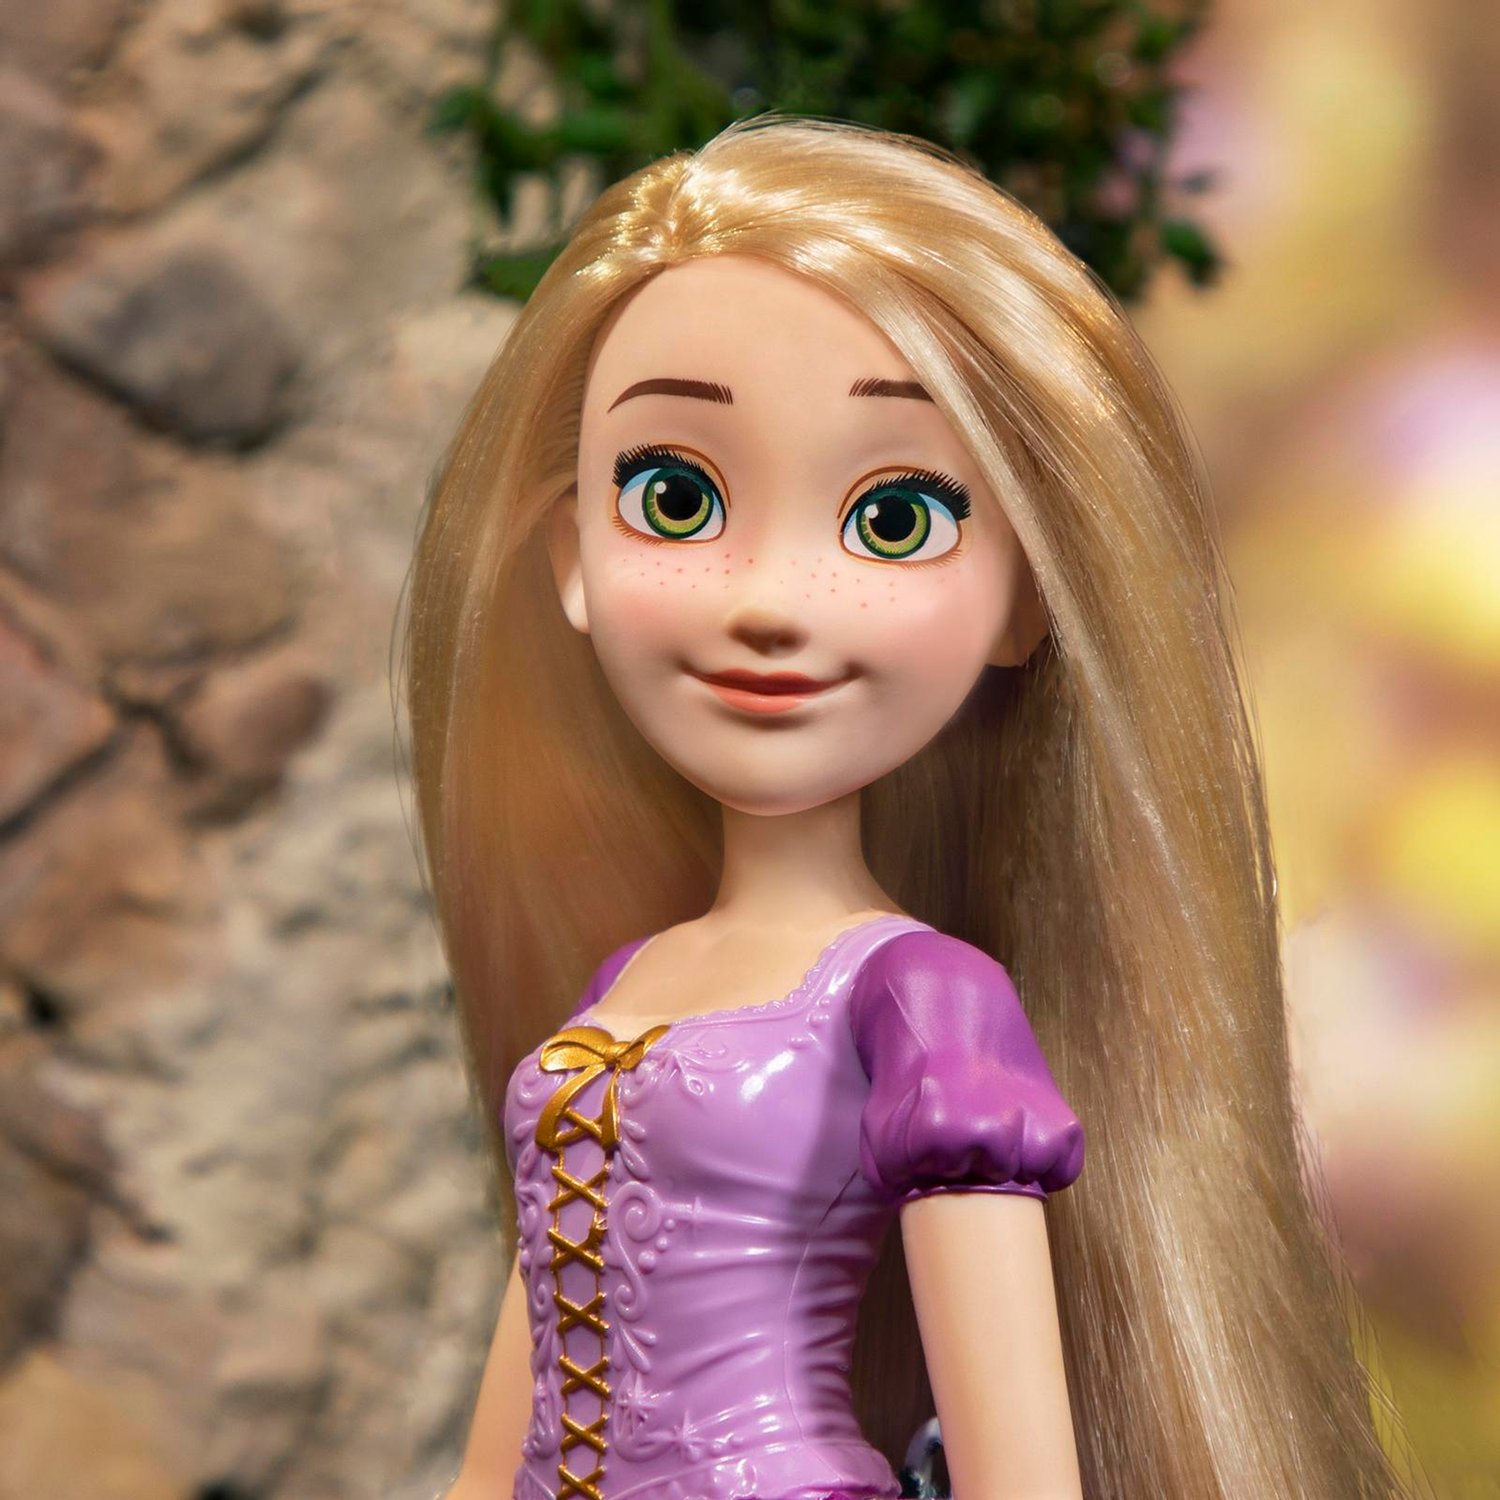 Кукла Disney Princess F1057 Рапунцель Локоны